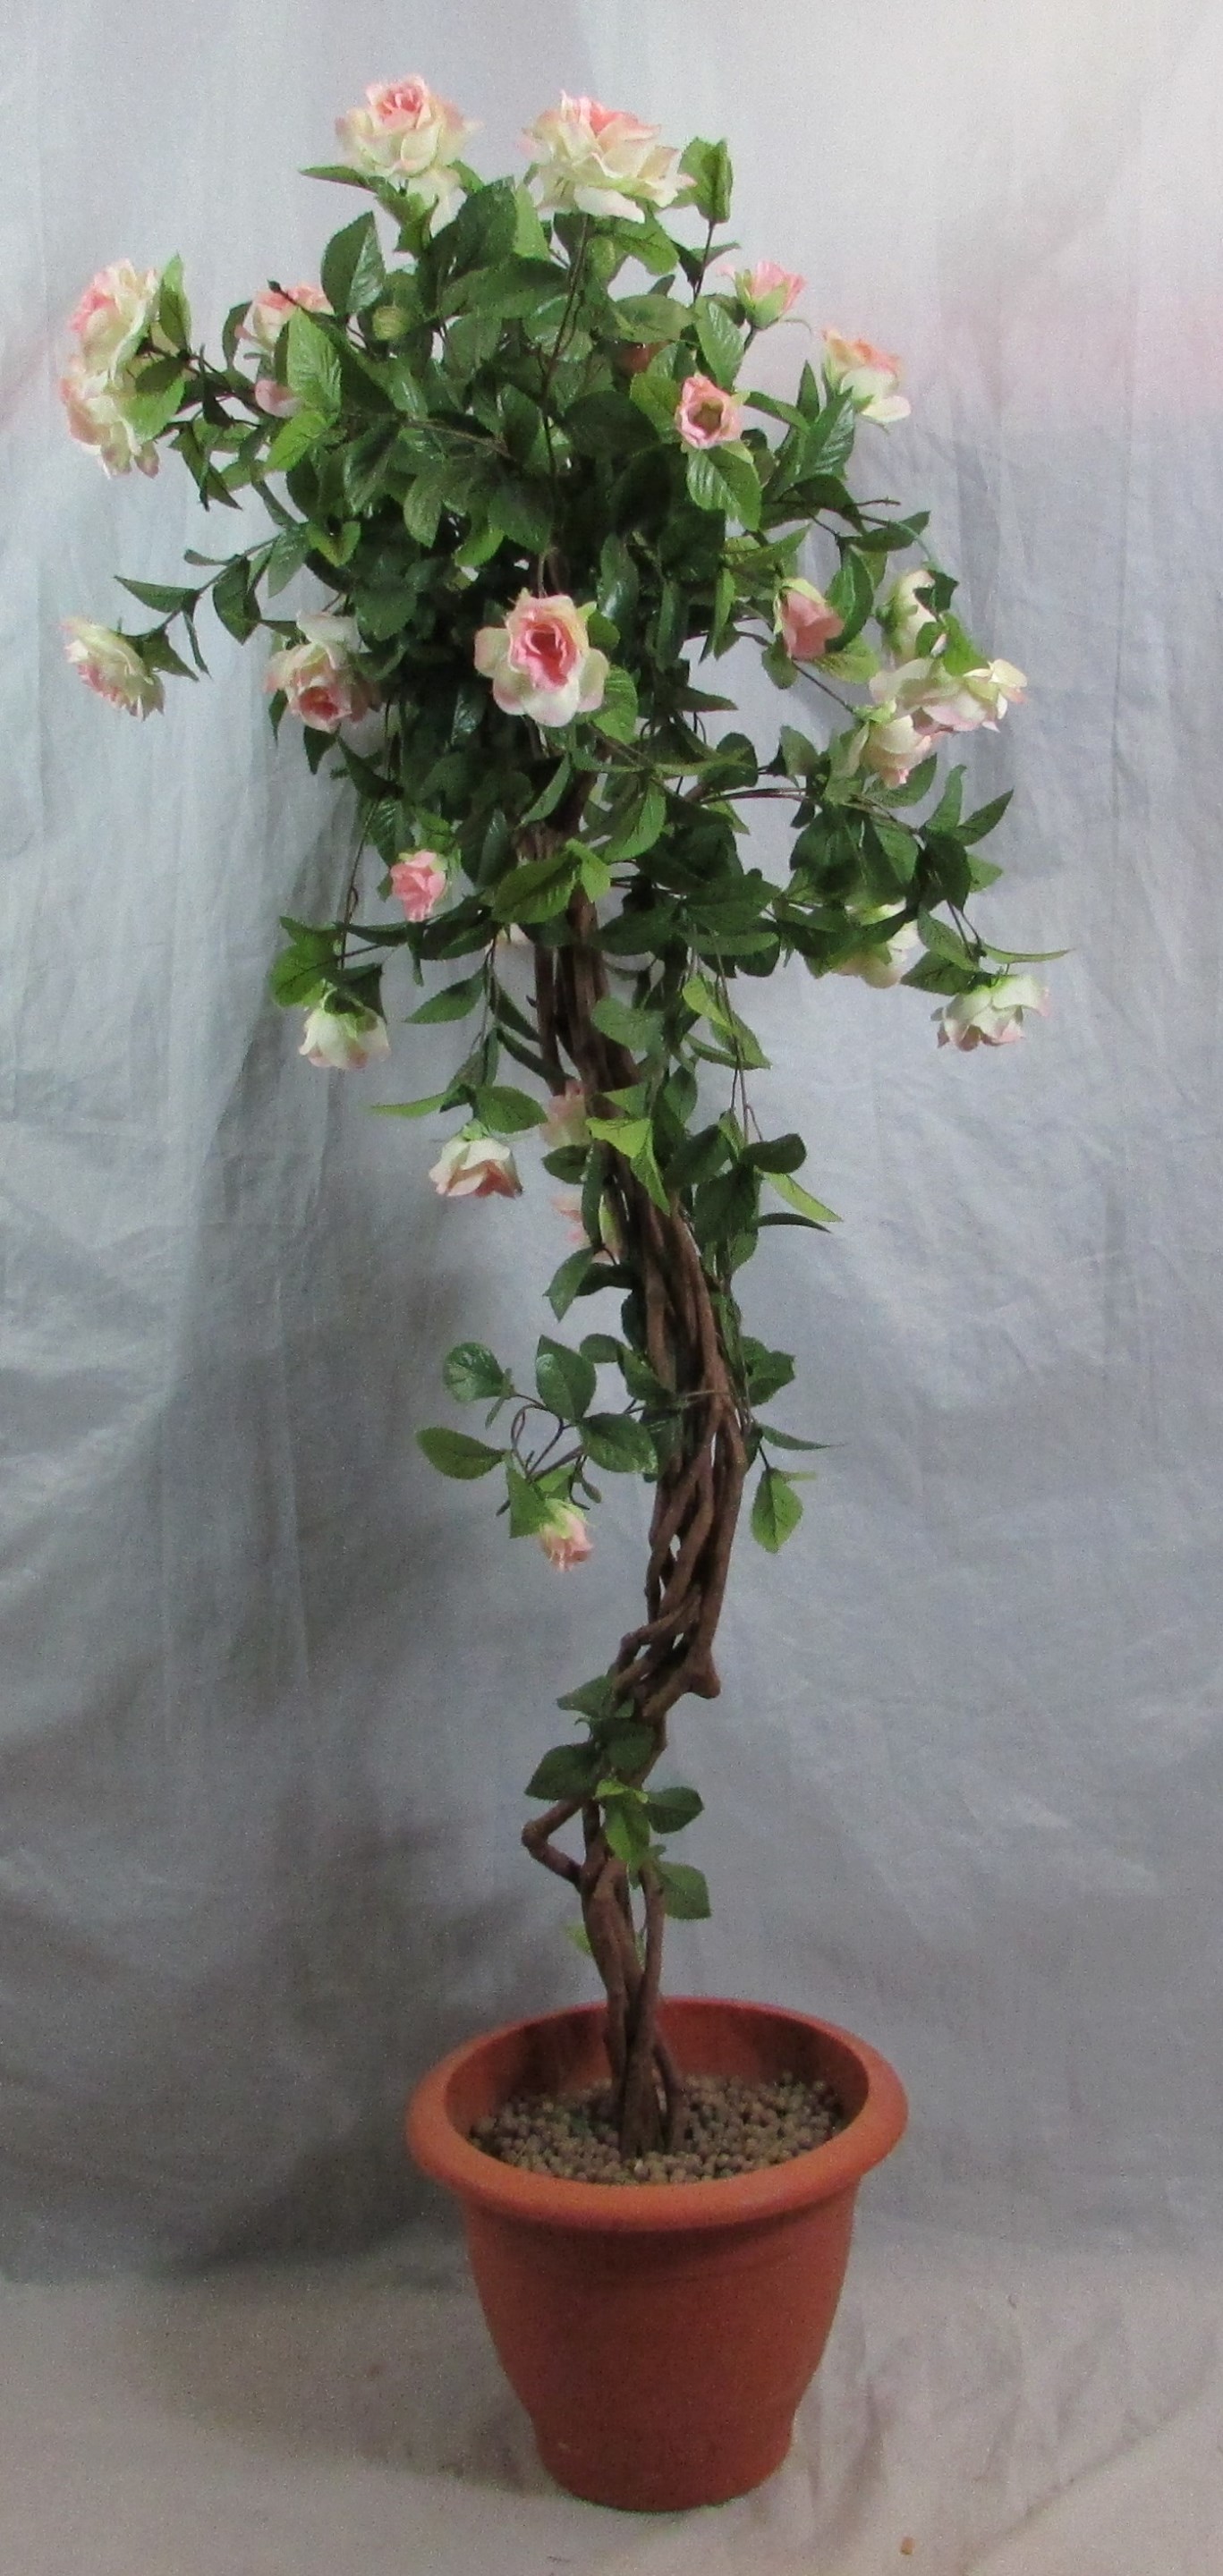 Rose Bush White/Pink roses